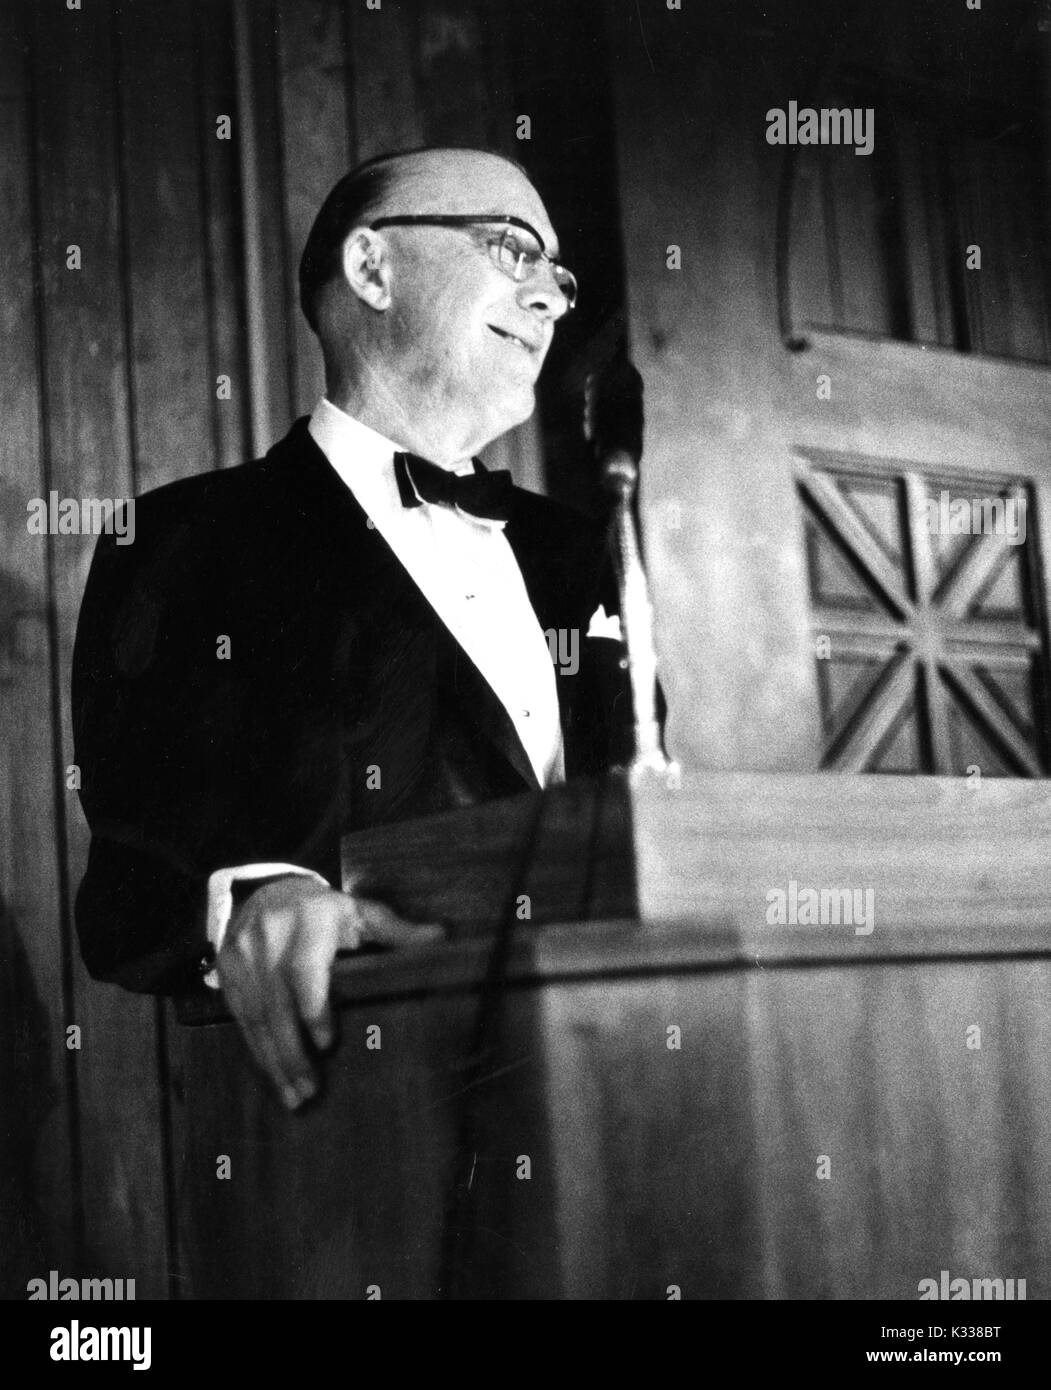 Portrait de Candide American educational administrator et président de l'Université Johns Hopkins, Milton S. Eisenhower debout sur un podium livrant un discours lors d'un dîner de l'association, 1971. Banque D'Images